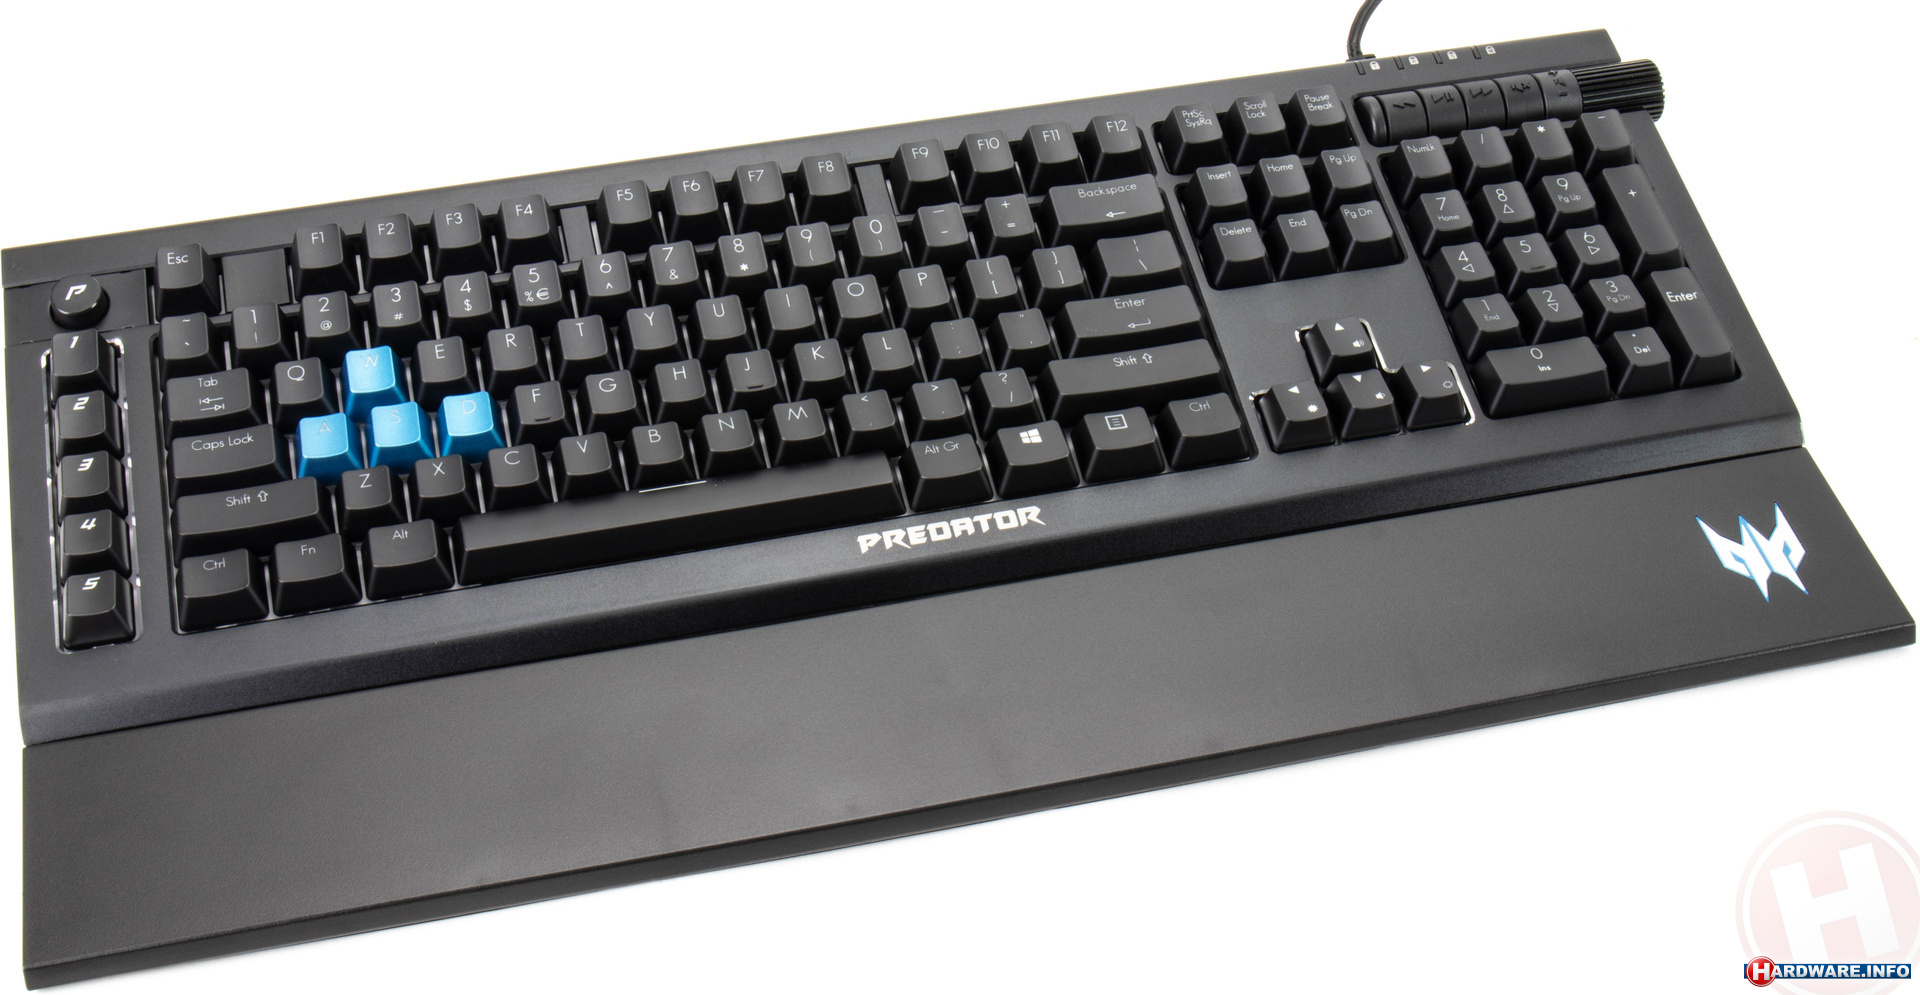 Verantwoordelijk persoon Slecht Uitdrukkelijk Acer Predator RGB Aethon 500 USB (US) toetsenbord - Hardware Info